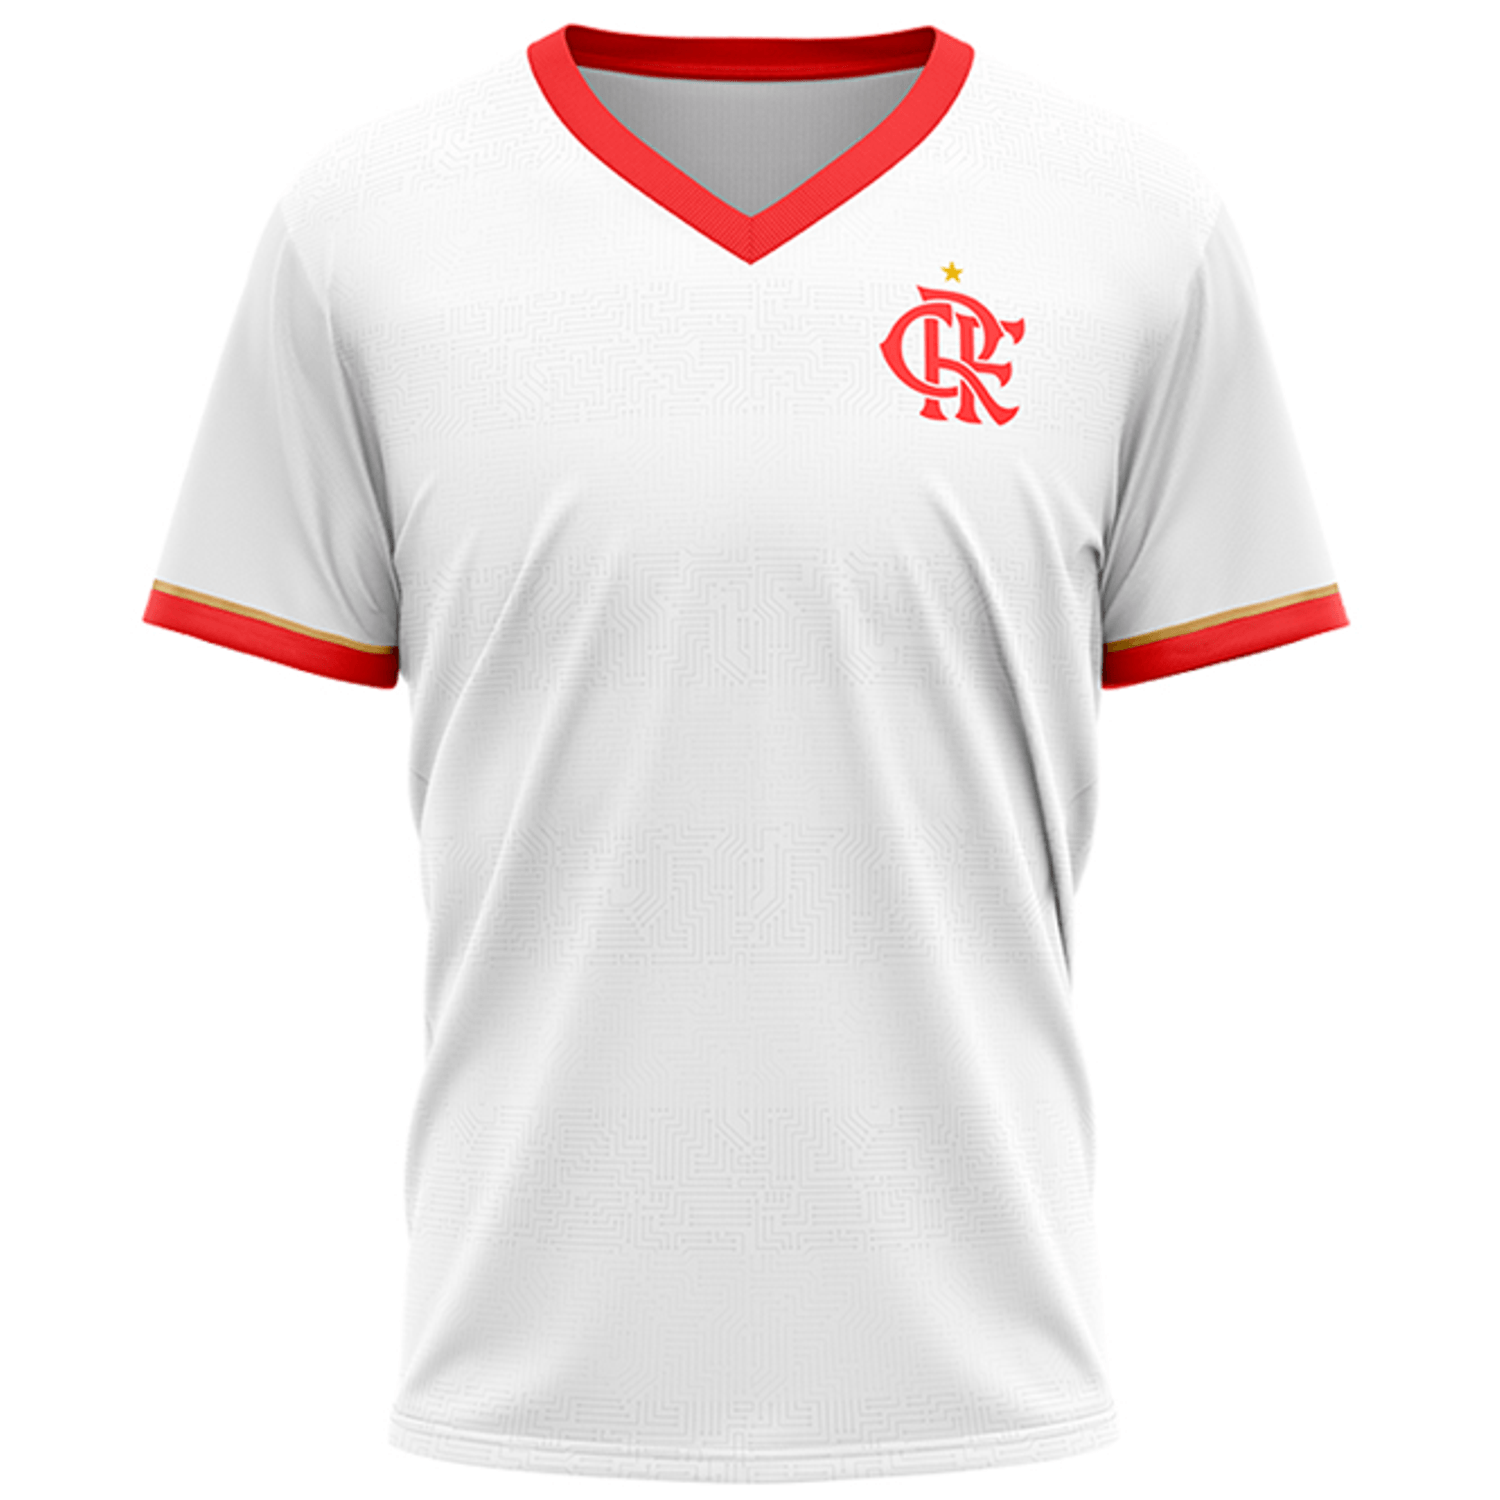 Nova camisa do Flamengo feminina 23/24 a partir de 149,99 Frete Gratis